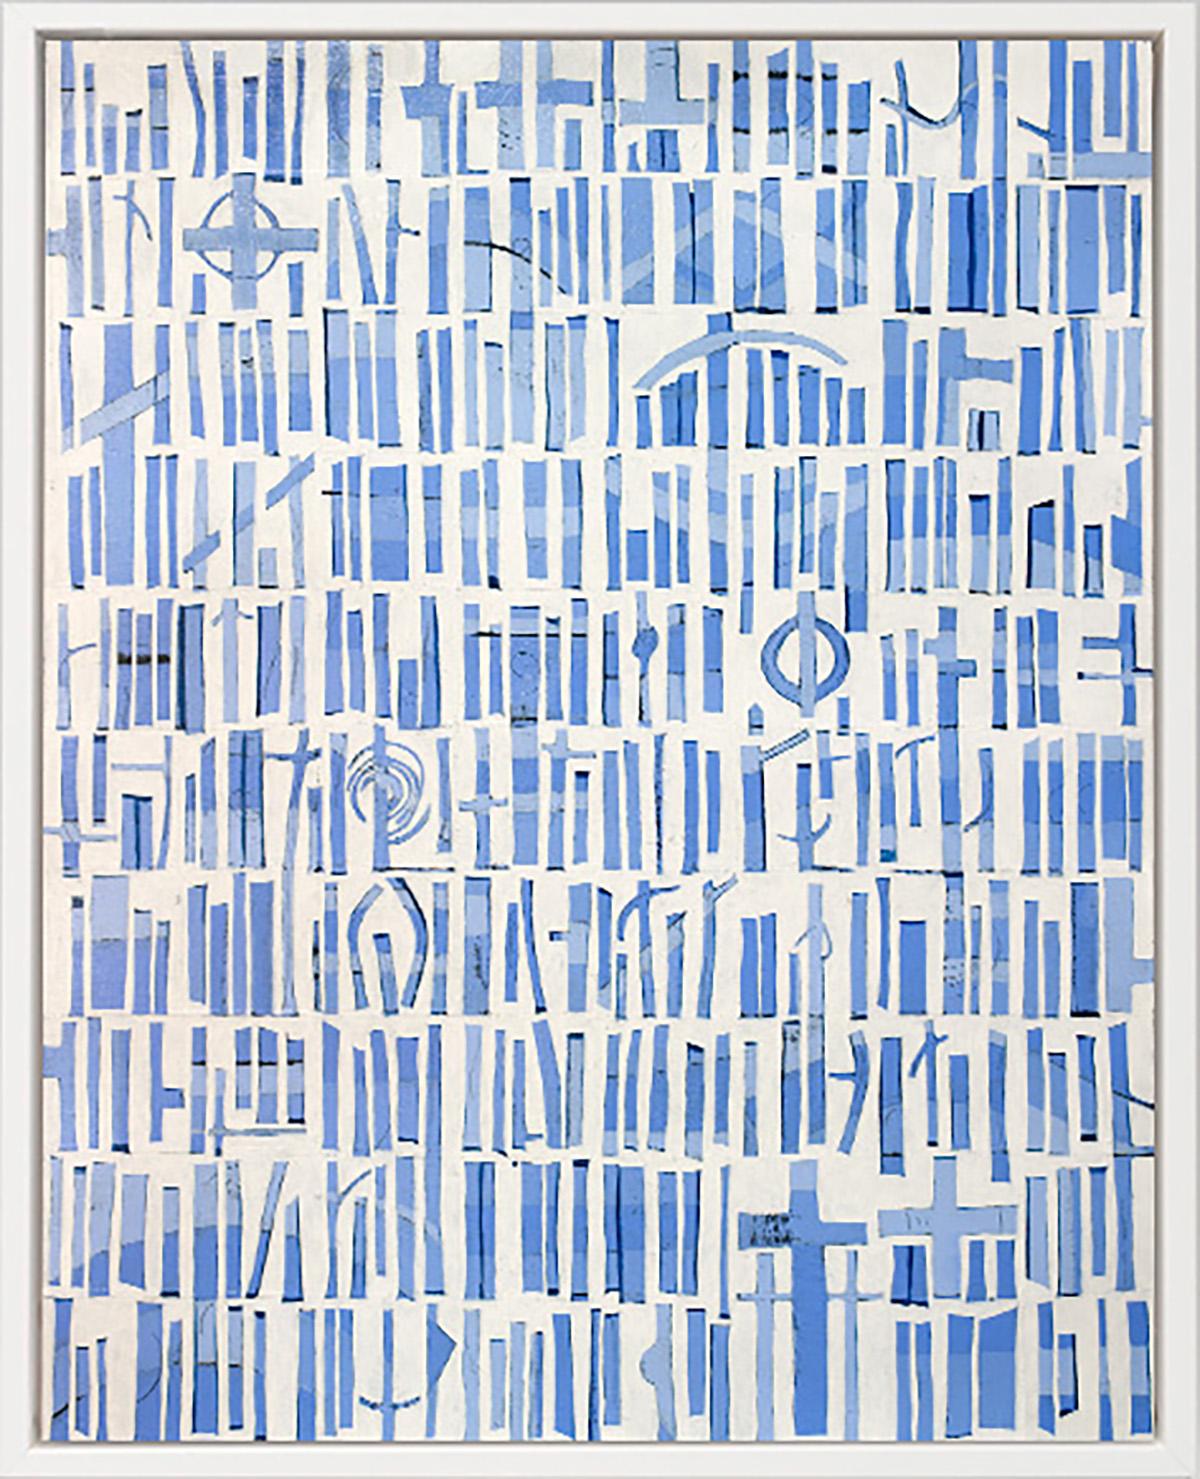 Abstract Print Sofie Swann - « Une journée d'été à Nantucket » Impression giclée en édition limitée, 76,2 cm x 60,9 cm